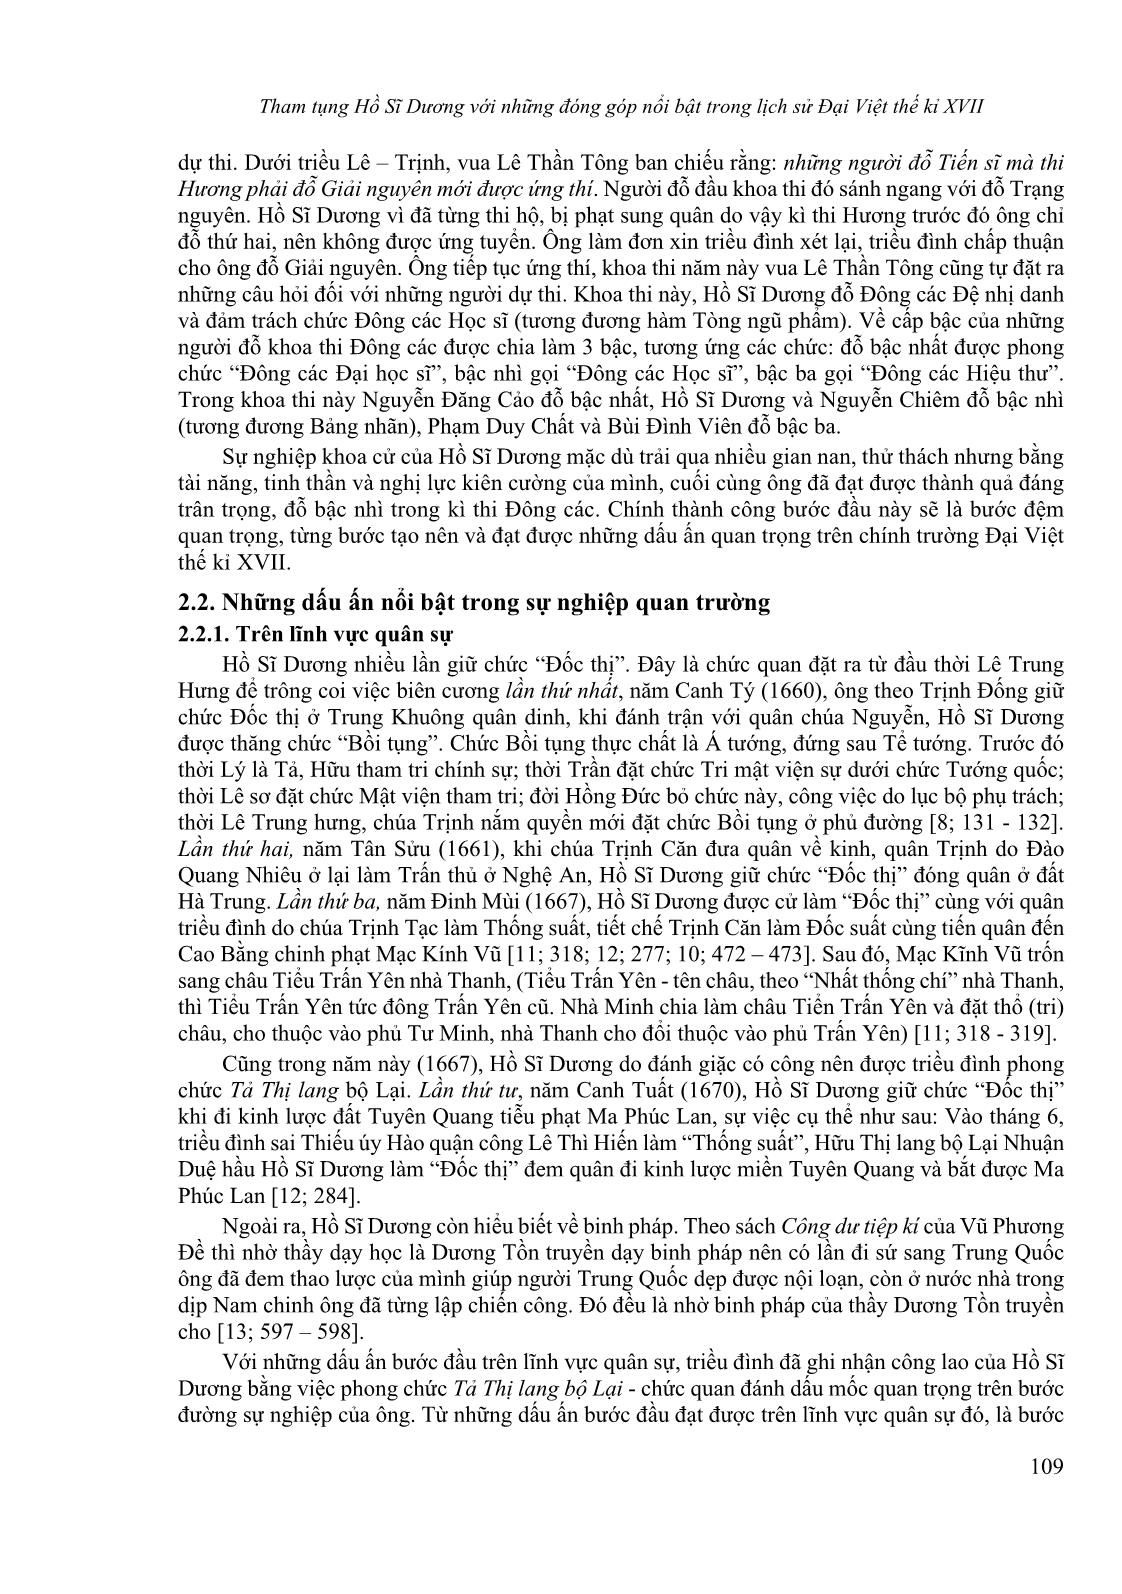 Tham tụng Hồ Sĩ Dương với những đóng góp nổi bật trong lịch sử Đại Việt thế kỉ XVII trang 3